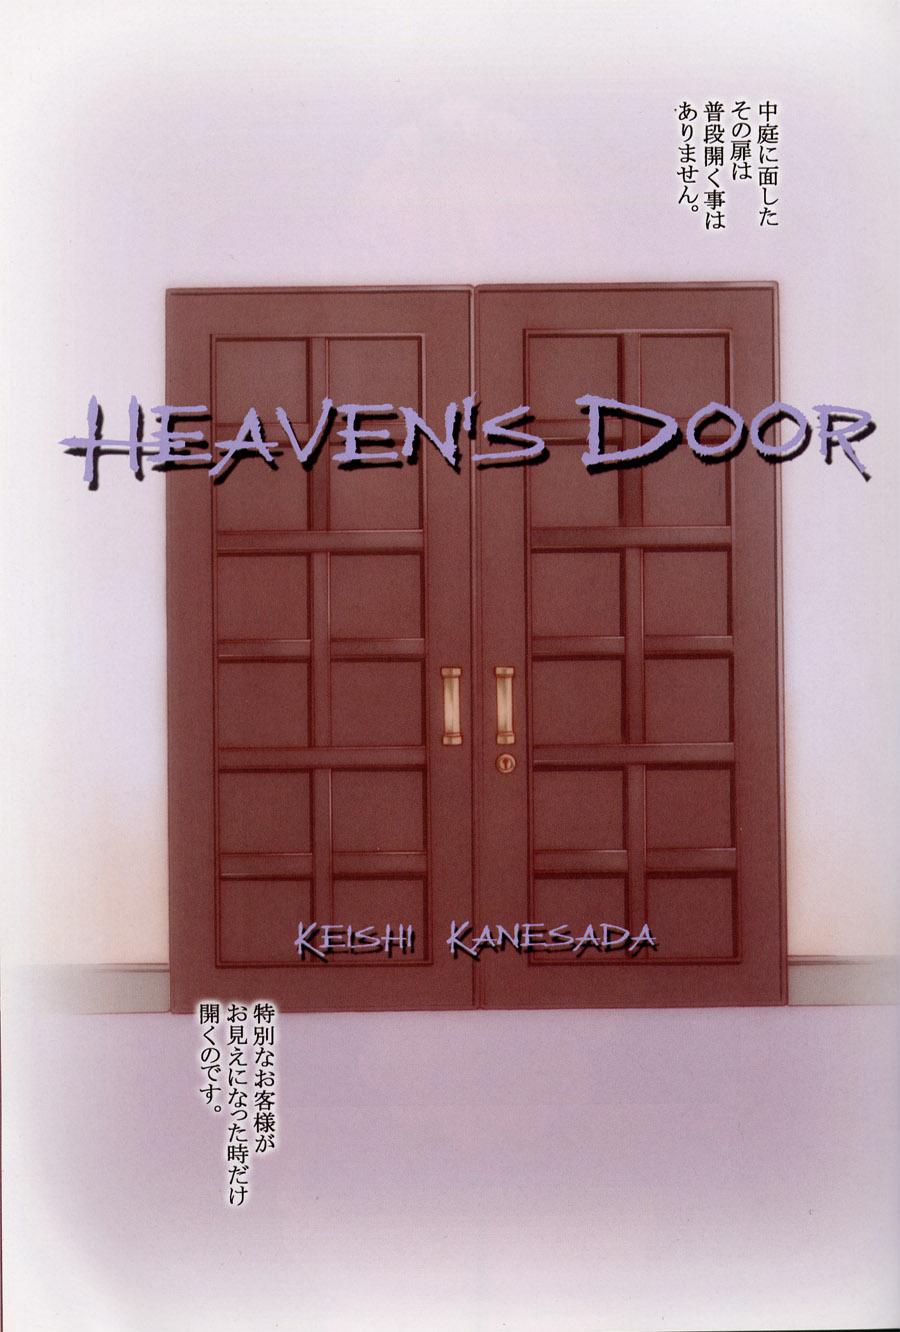 HEAVEN'S DOOR 1